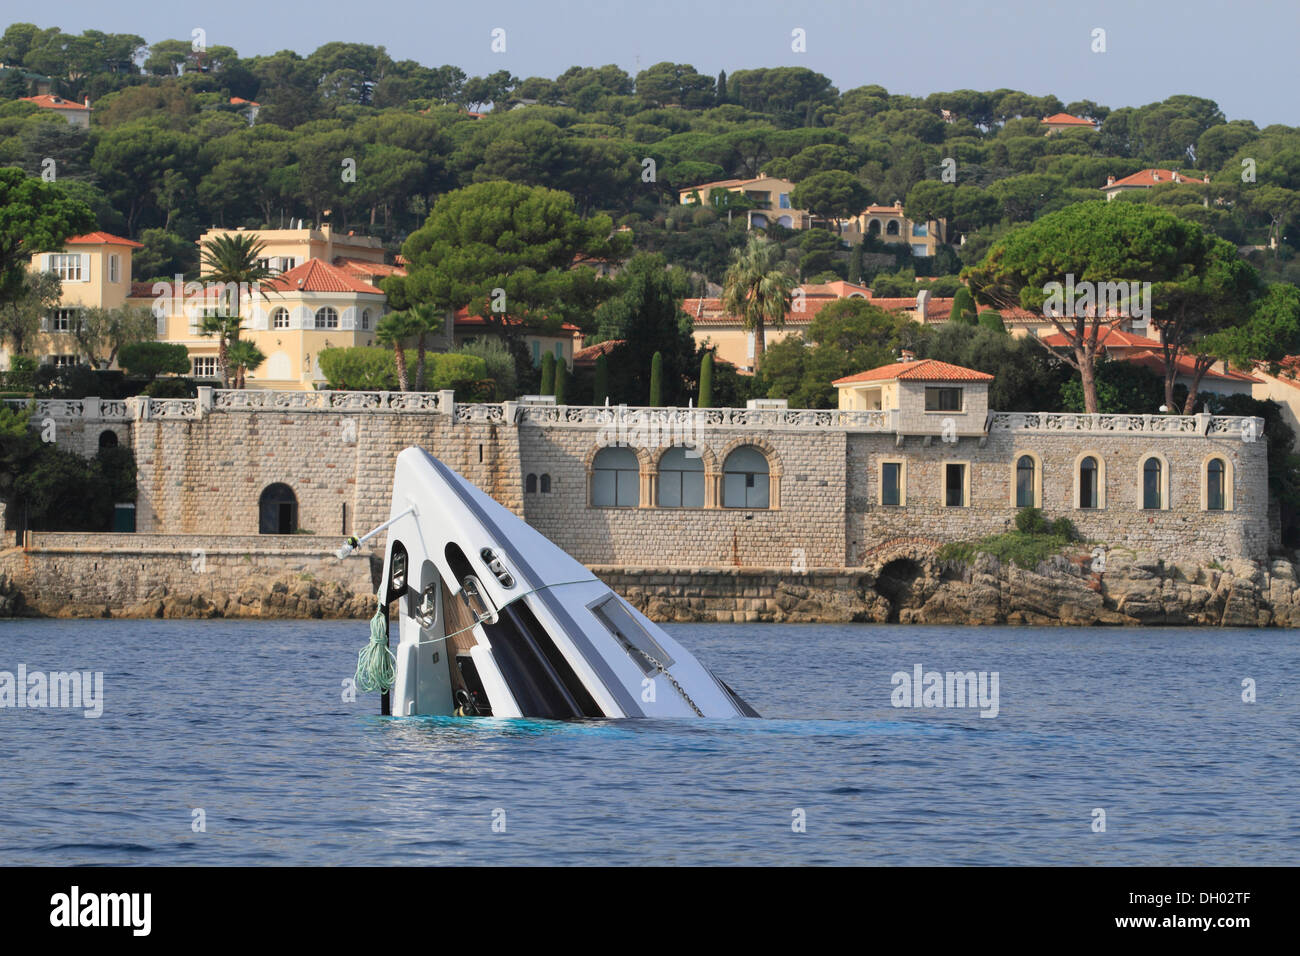 L'épave de l'arc en saillie motor yacht de Vals II, coulé en septembre 2012, dans les eaux au large du Cap Ferrat, Côte d'Azur, France Banque D'Images